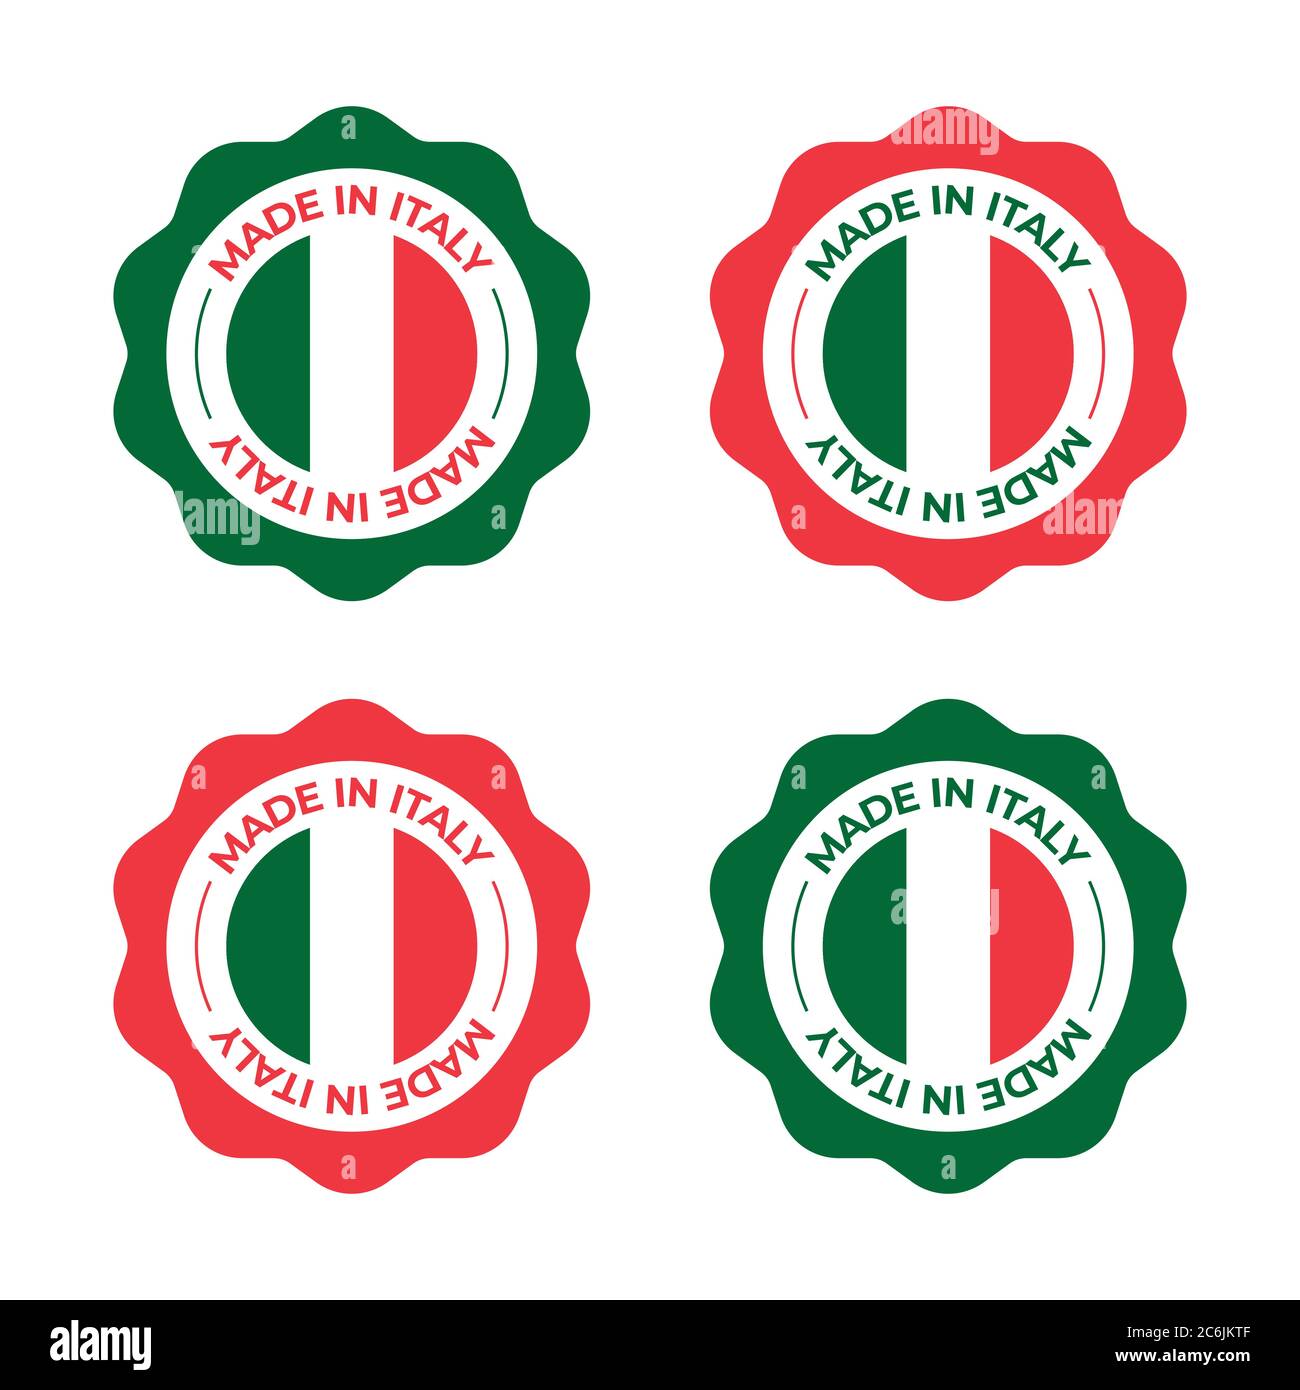 Design vettoriale Made in Italy illustrazione del simbolo con logo a icone con concetto di bandiera italiana rosso e verde per etichetta di prodotto e commerciale Illustrazione Vettoriale